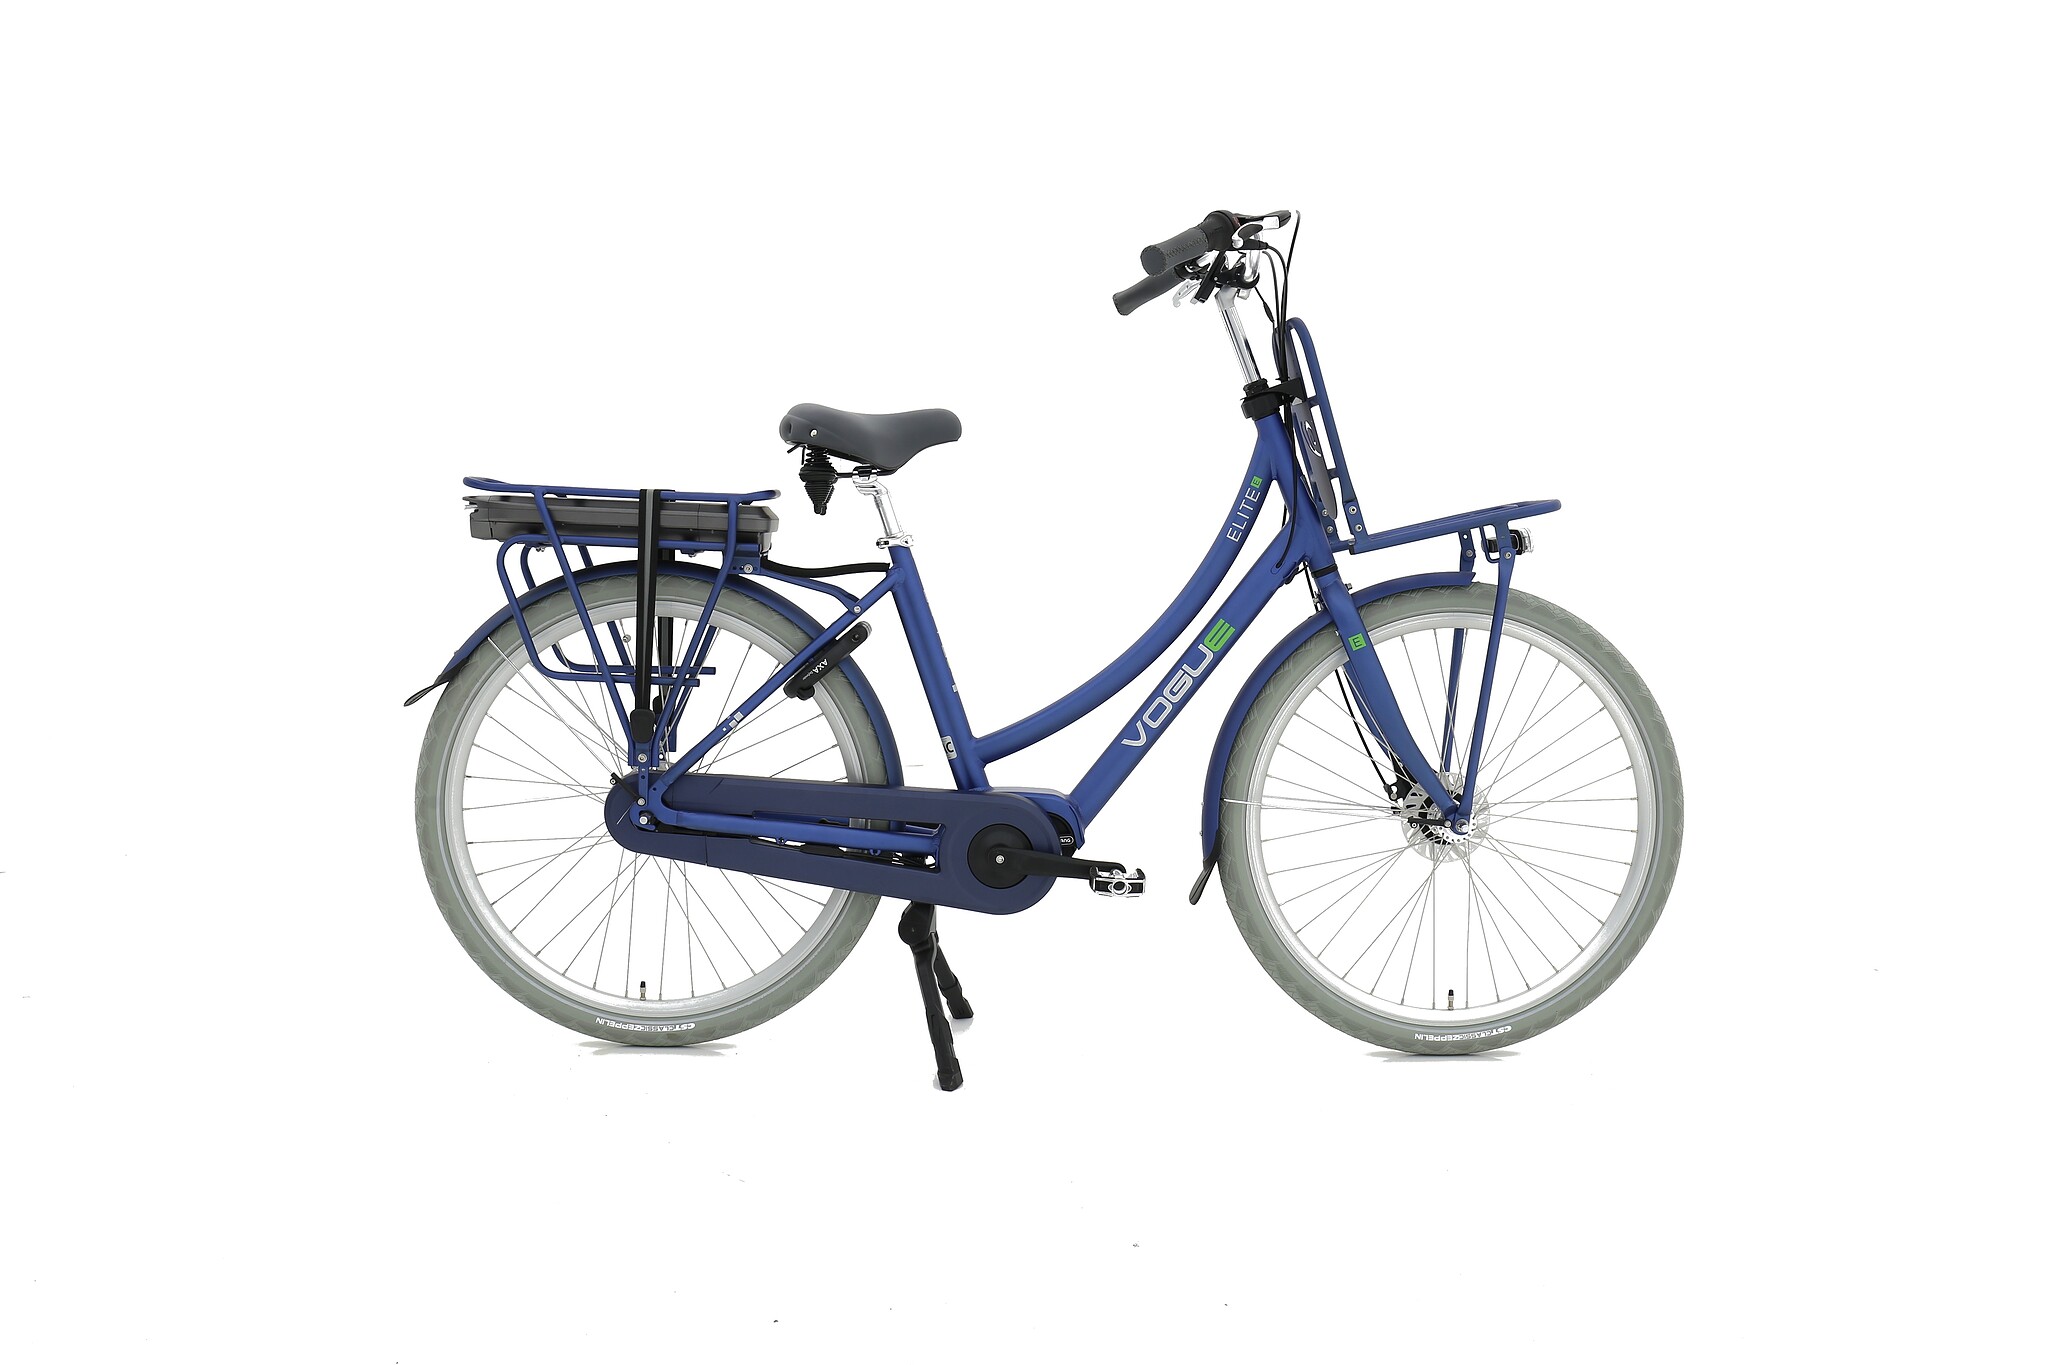 Wardianzaak Droogte Getalenteerd Vogue Elektrische fiets Elite M300 Dames 50 cm Blauw 468 Wh Blauw -  FietsenMagazijn